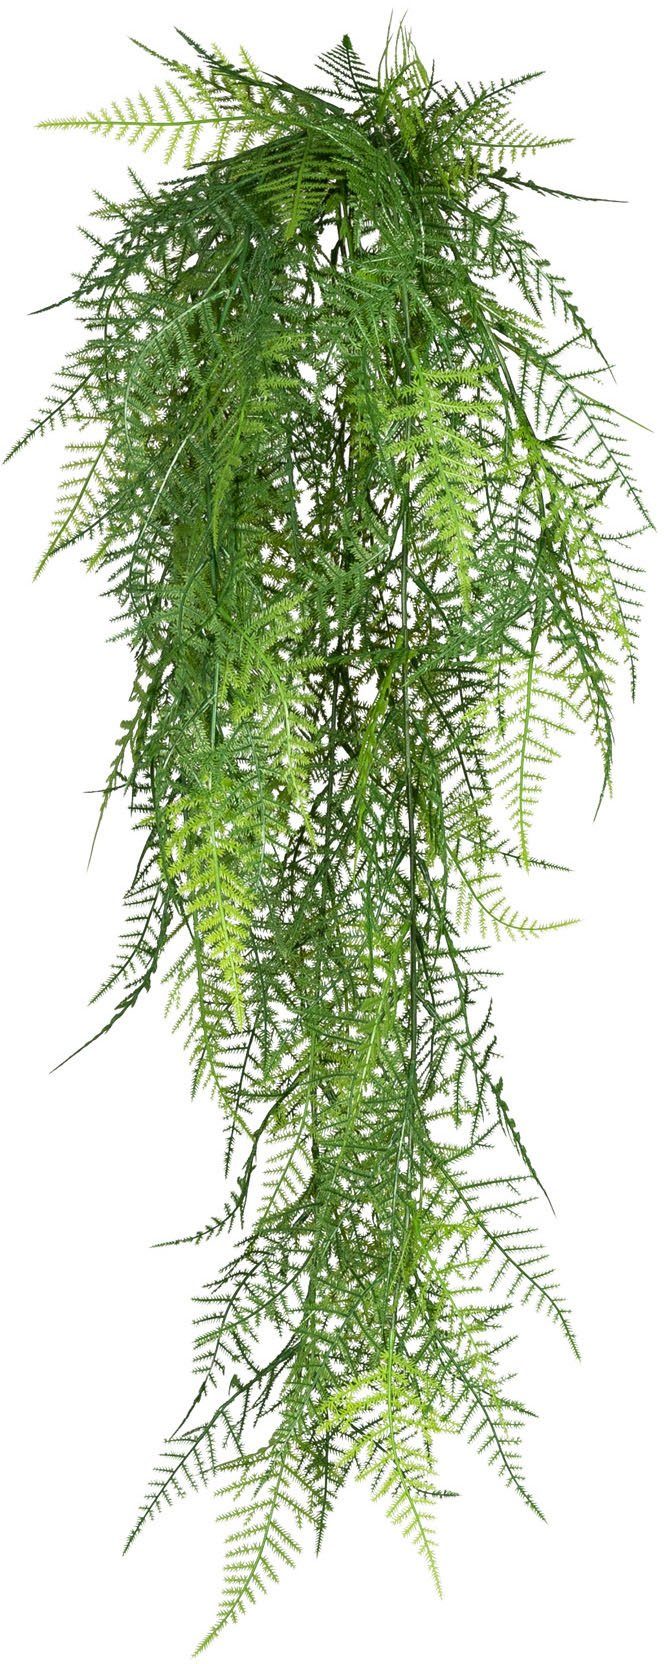 Kunstranke Hänger Asparagus plumosus Asparagus, Creativ green, Höhe 80 cm